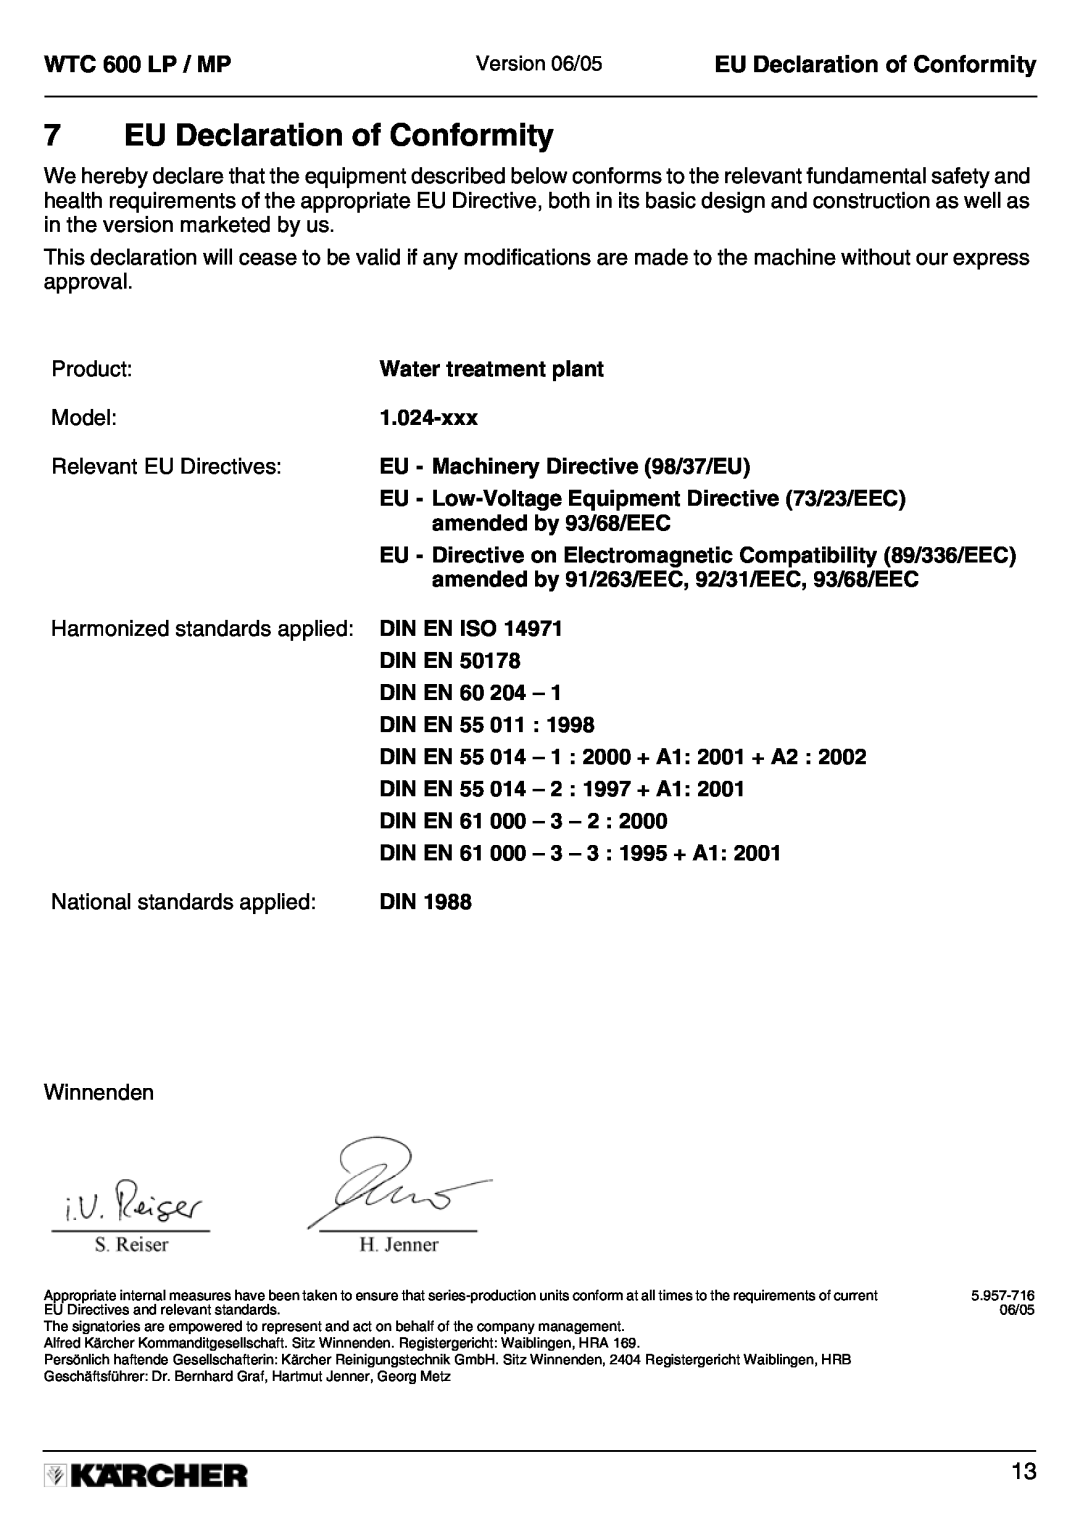 Karcher A 2011201 manual EU Declaration of Conformity, WTC 600 LP / MP 